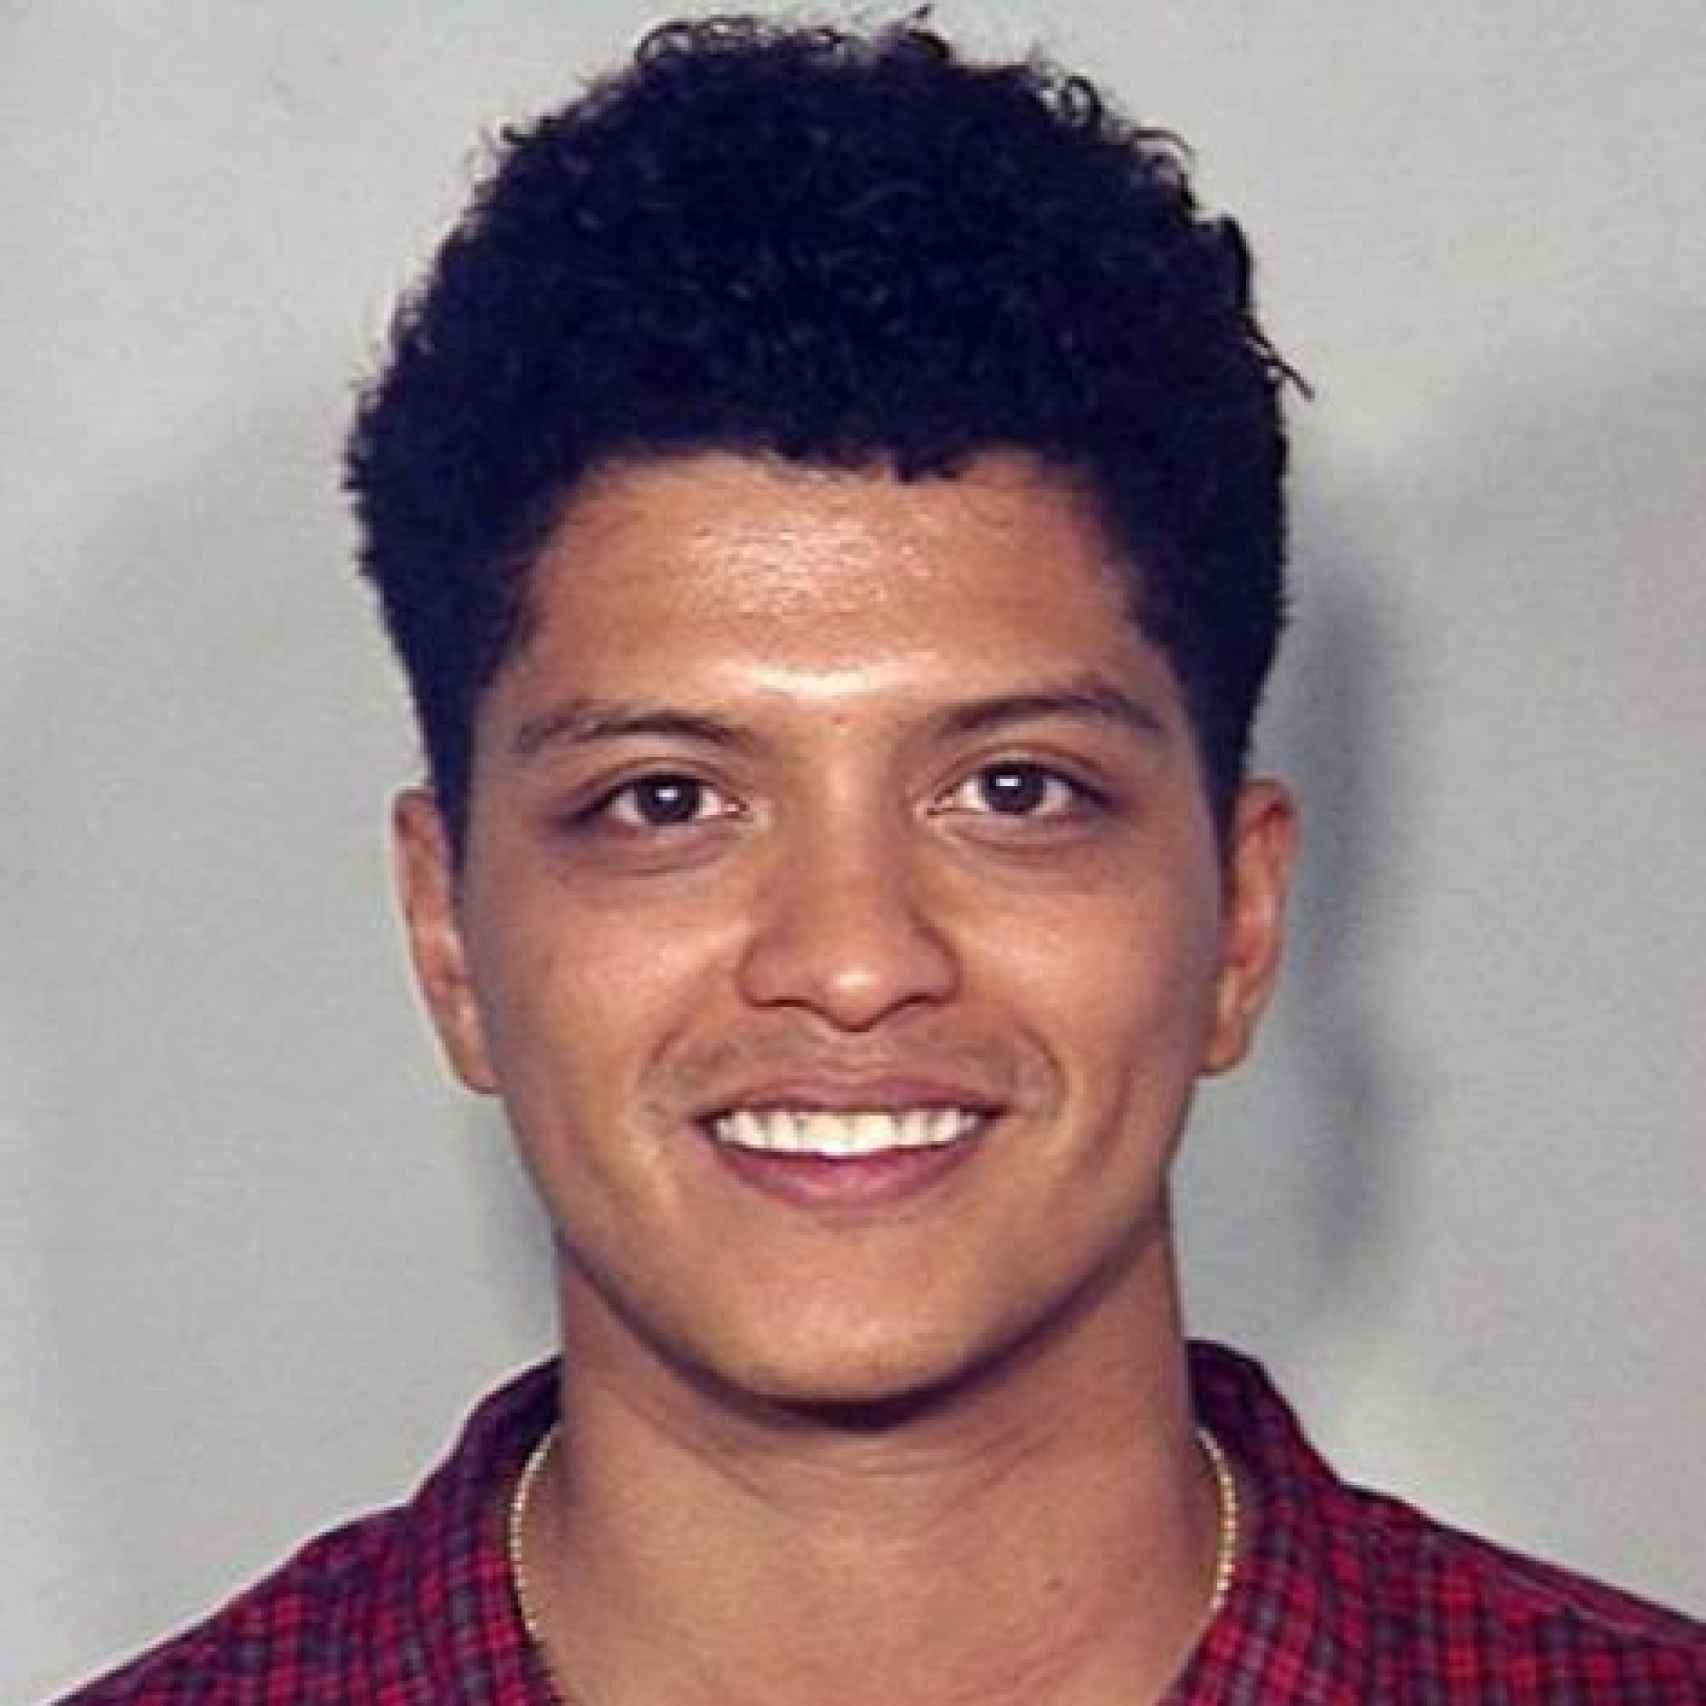 Ficha policial de Bruno Mars